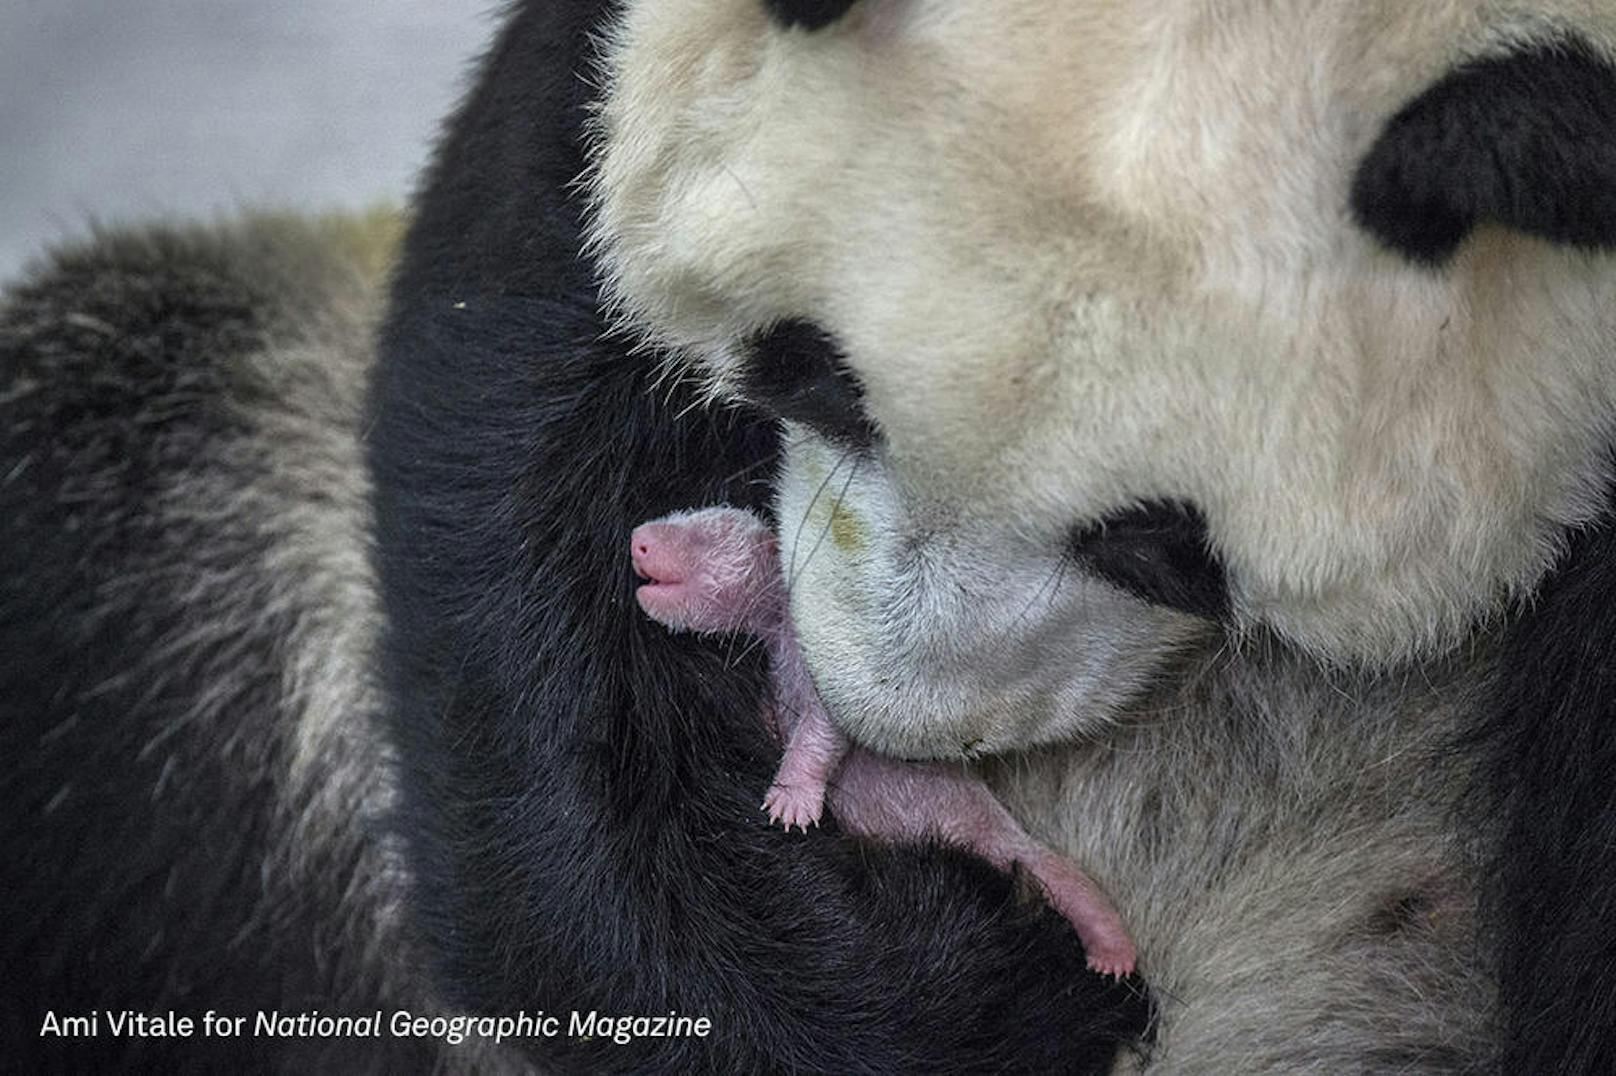 <b>Nature - 2. Preis, Stories</b><br> Die siebenjährige Pandadame Min Min mit ihrem Baby im Bifengxia Pandazucht- und Forschungszentrum in Sichuan. Drei Tage warteten die besorgten Pfleger auf die Geburt des Pandamädchens. Es wurde schließlich angenommen, dass das Baby tot zur Welt kommen wird. Stattdessen erschien mit einem lauten Schrei das größte Pandajunge des Jahres. Es ist Min Mins erstes Junge.